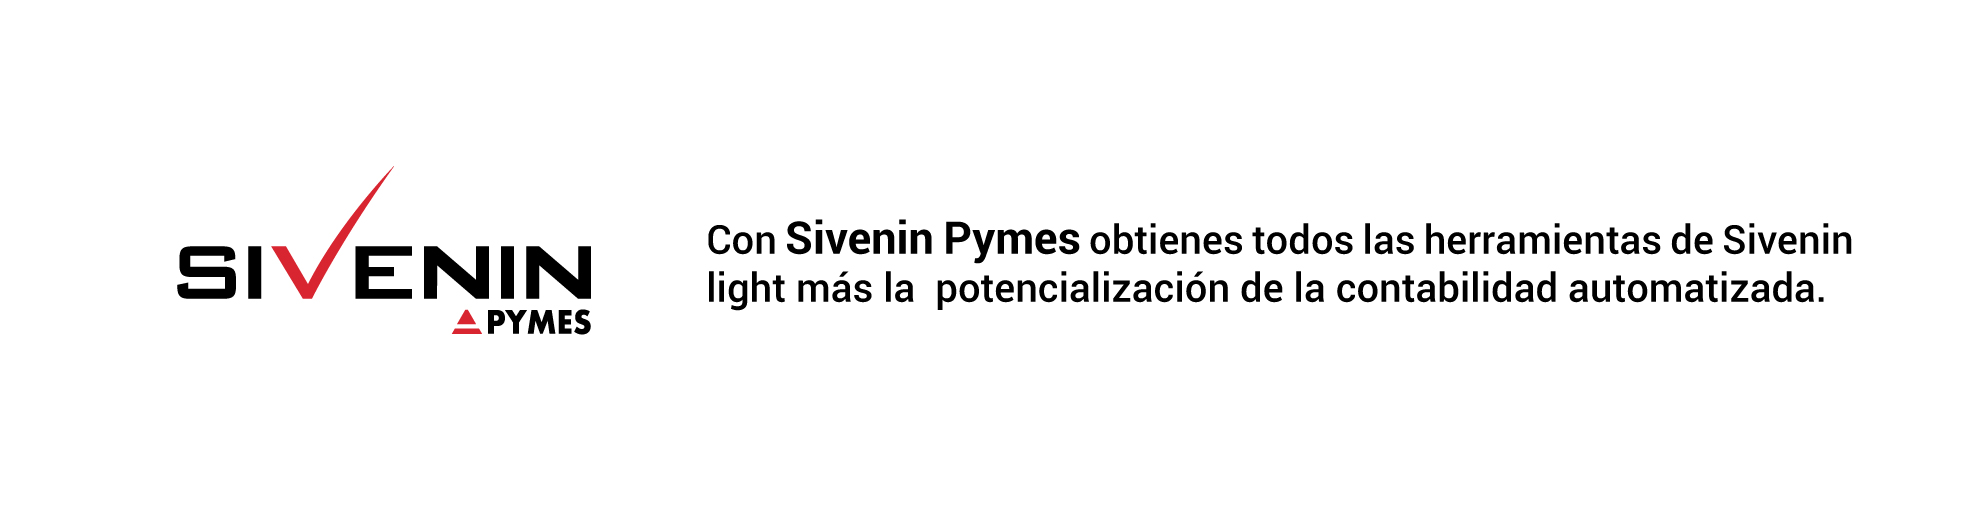 Sivenin-pymes